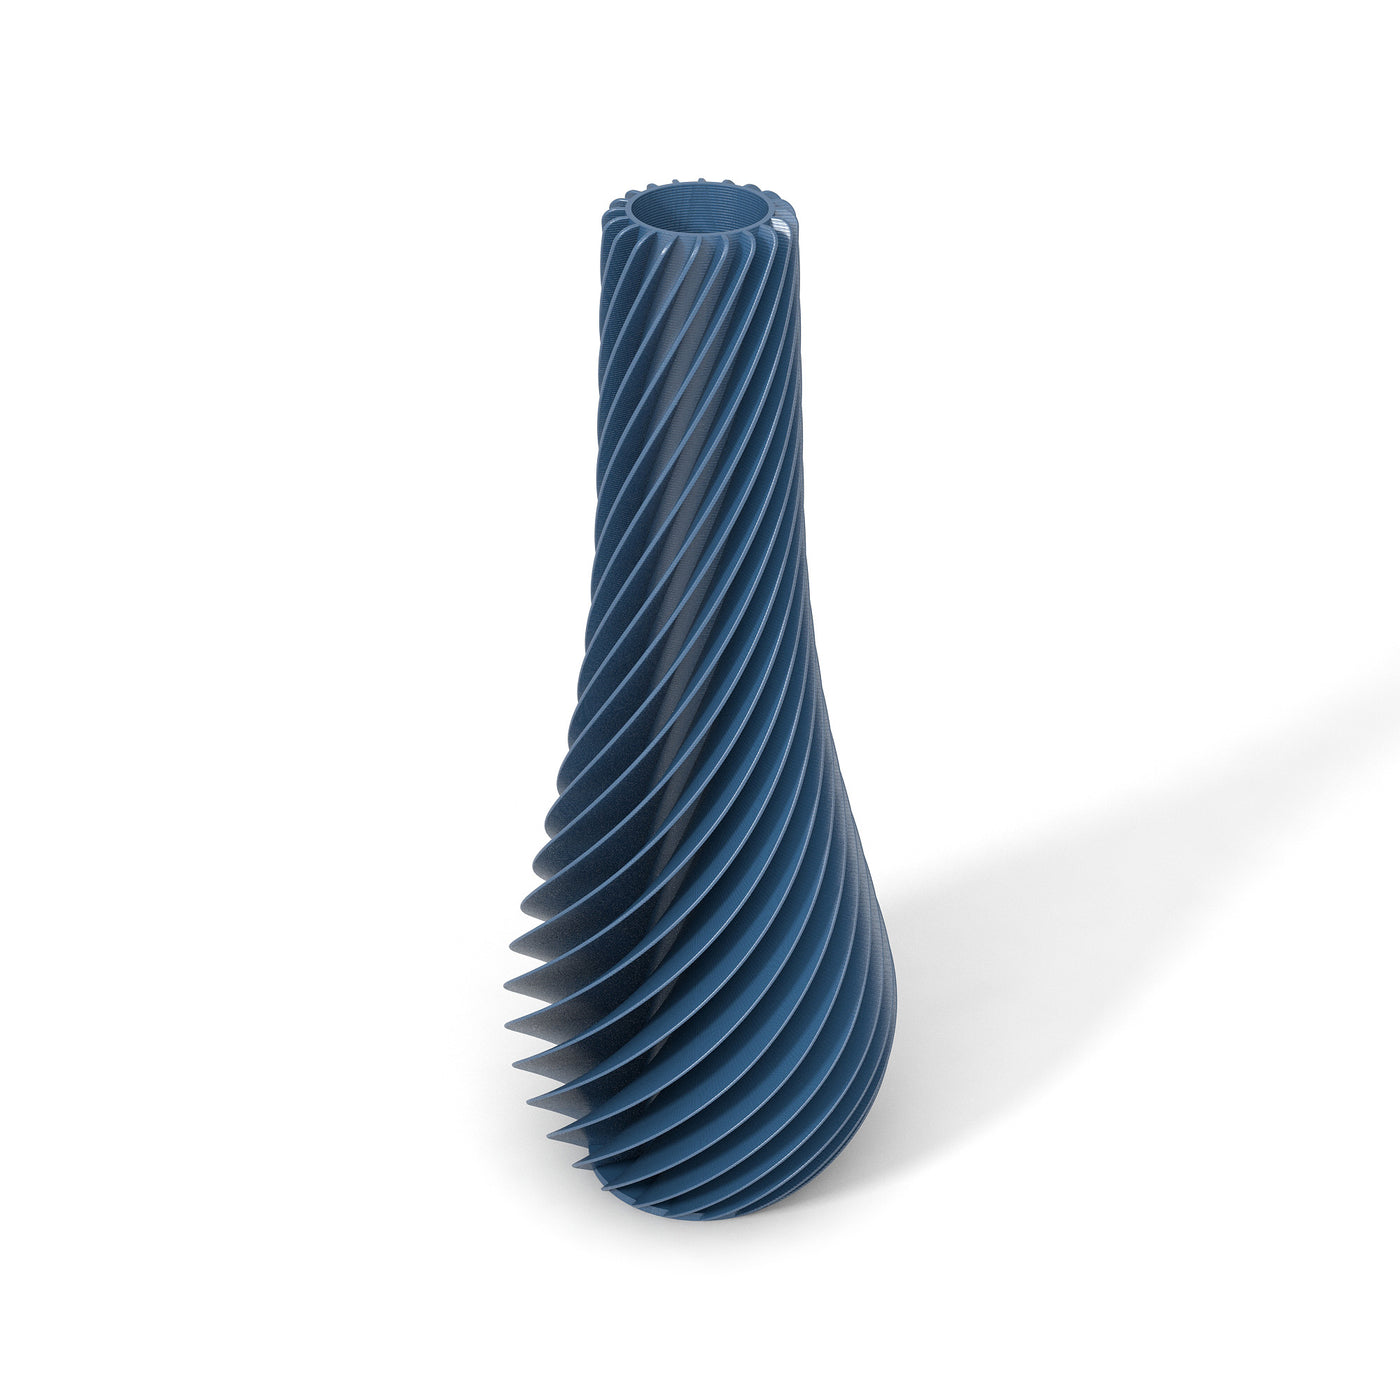 Tmavě modrá designová váza 3D print SPIRAL 2